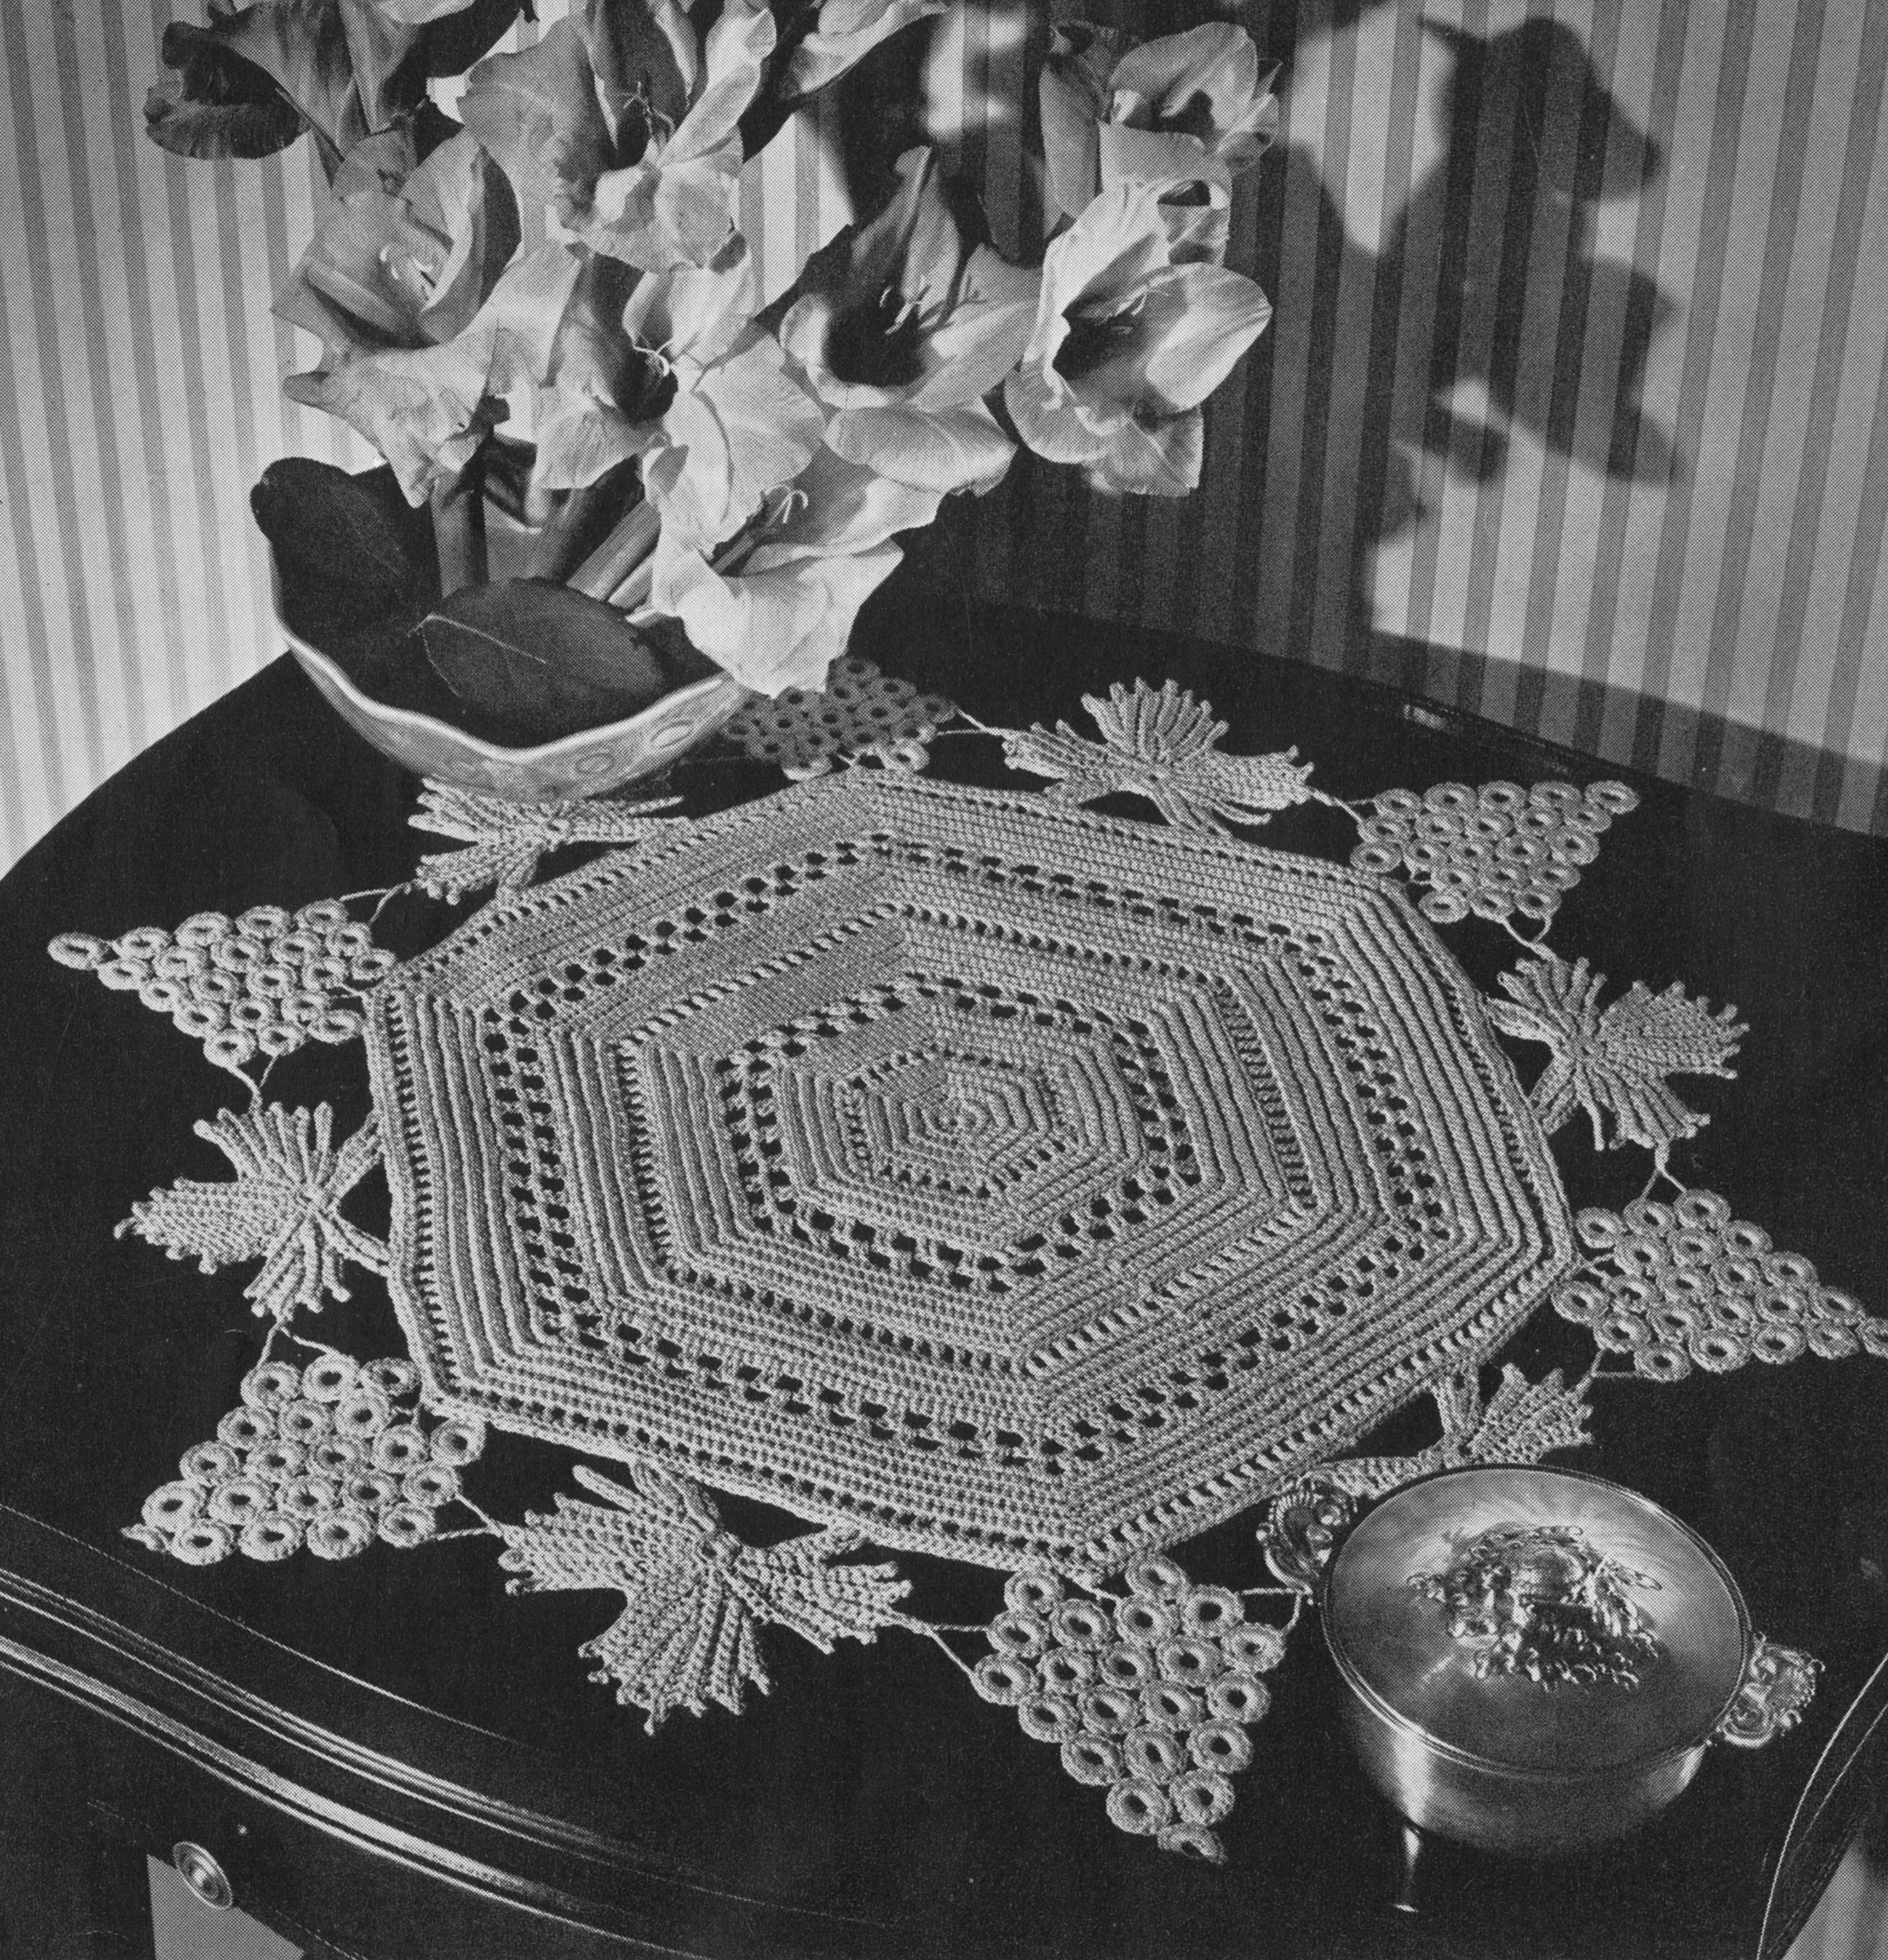 grape arbor crochet doily centerpiece vintage pattern